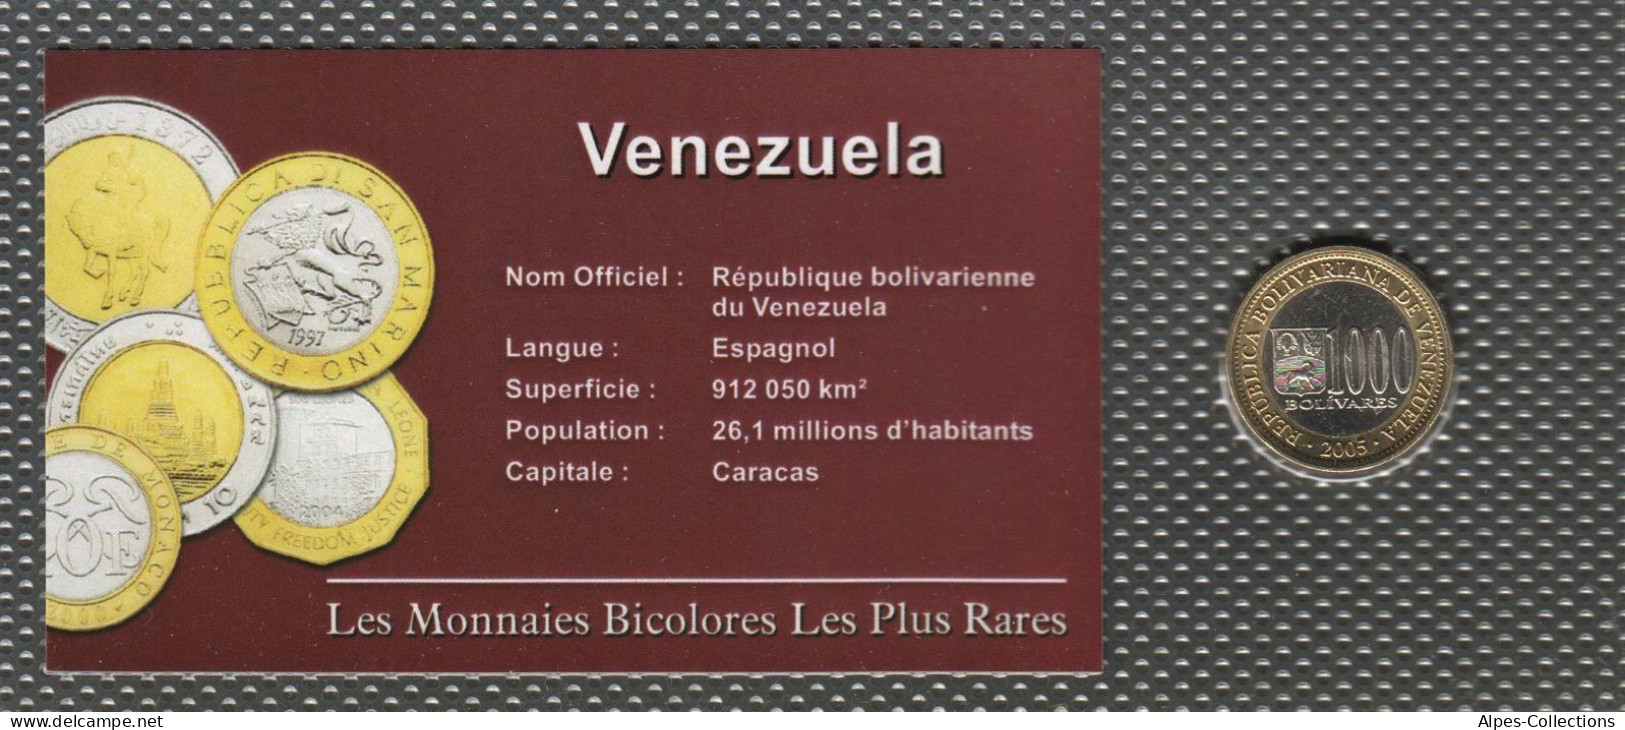 VEN85 - VENEZUELA - MONNAIES BICOLORES LES PLUS RARES - 1 000 Bolivares - 2005 - Venezuela